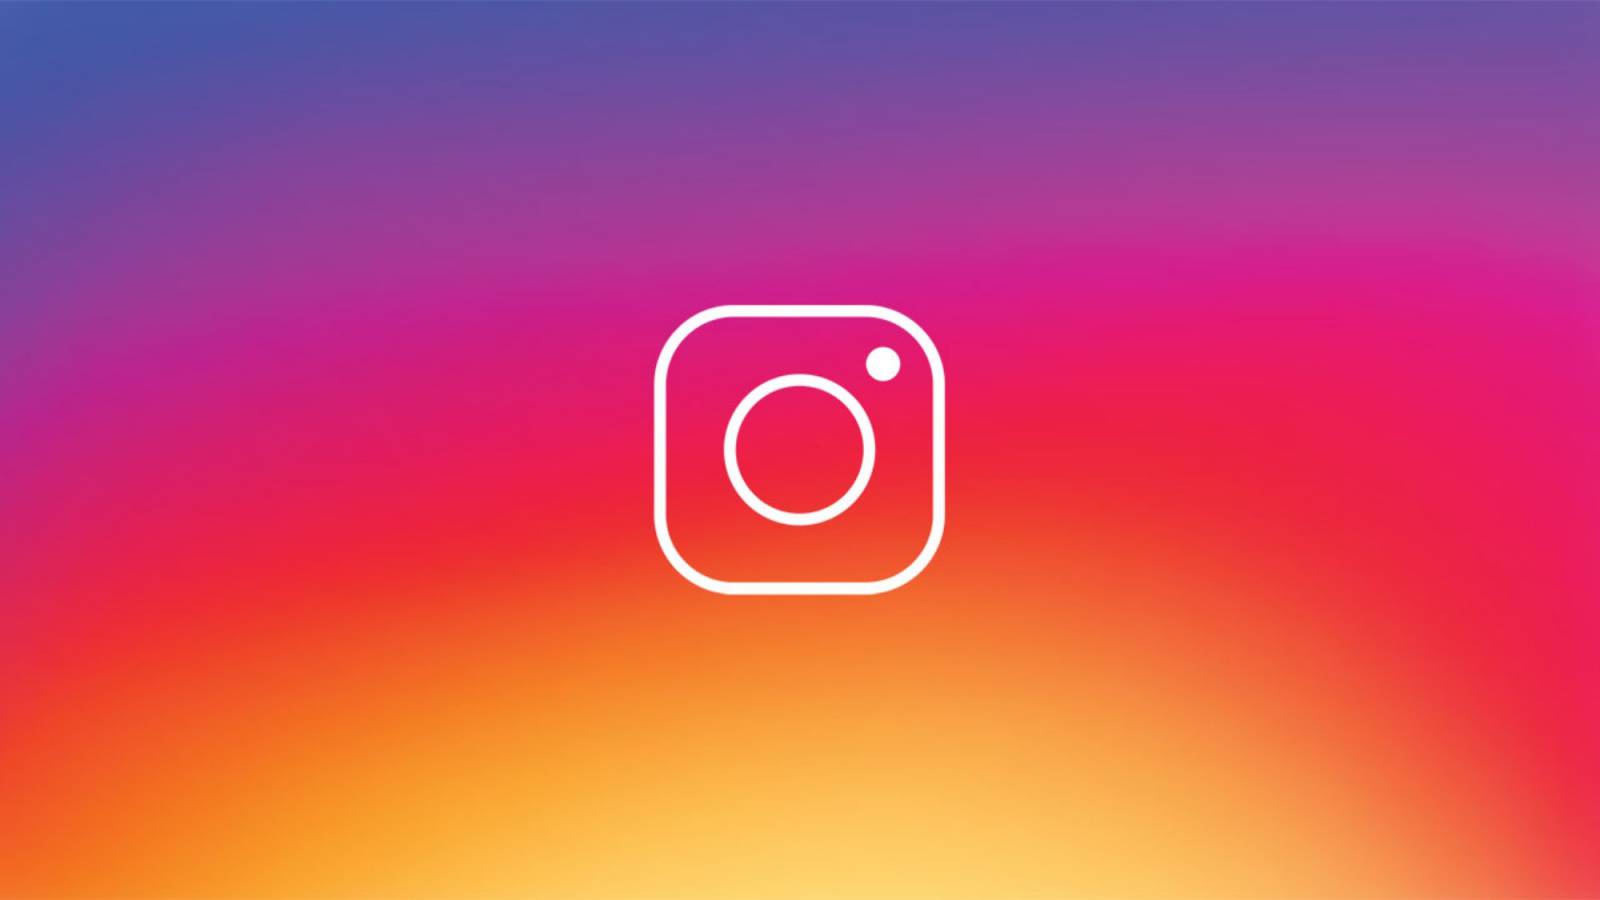 Instagram update released today phones